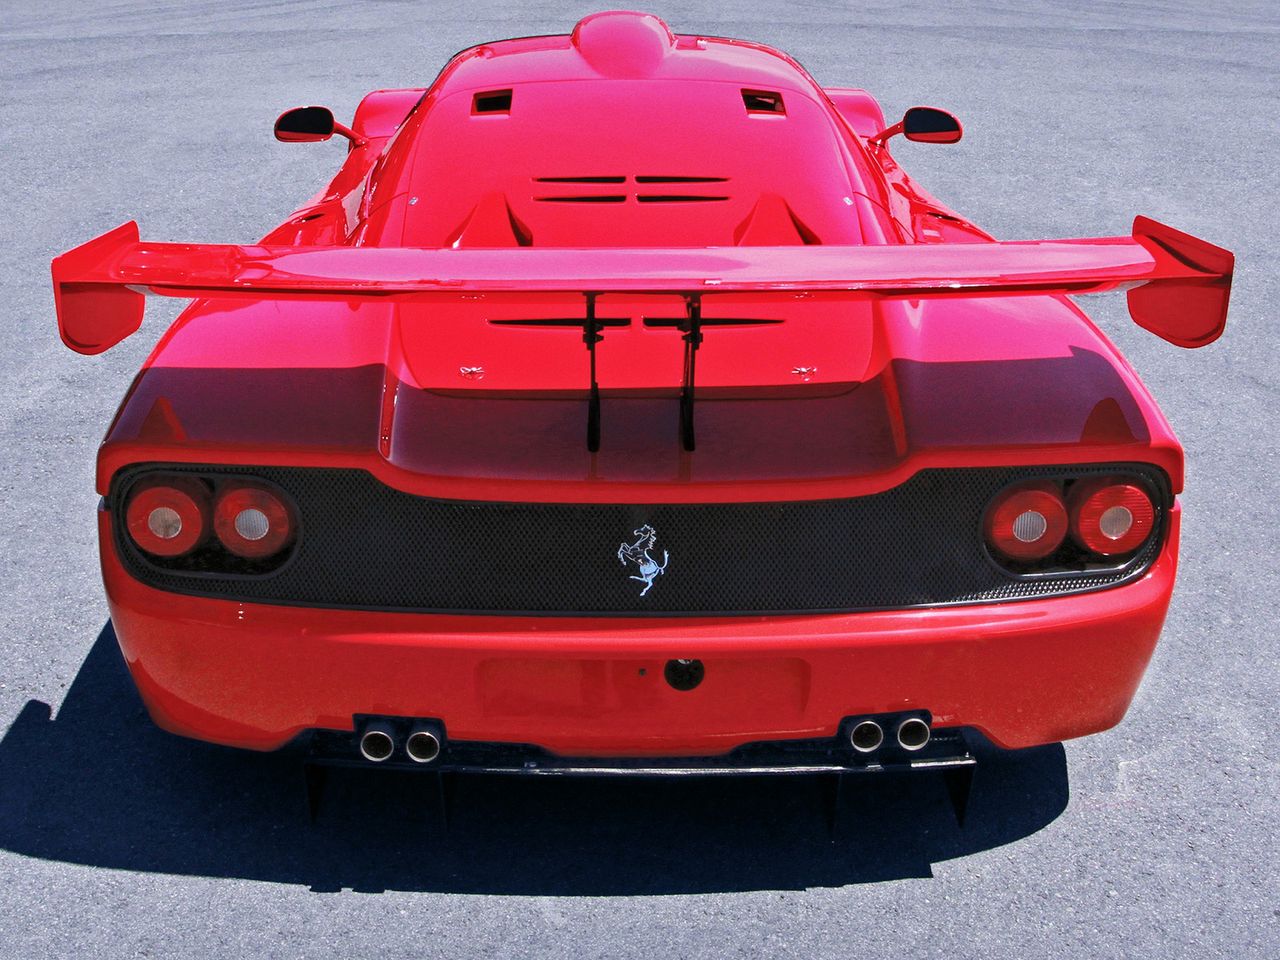 Ferrari F50 GT